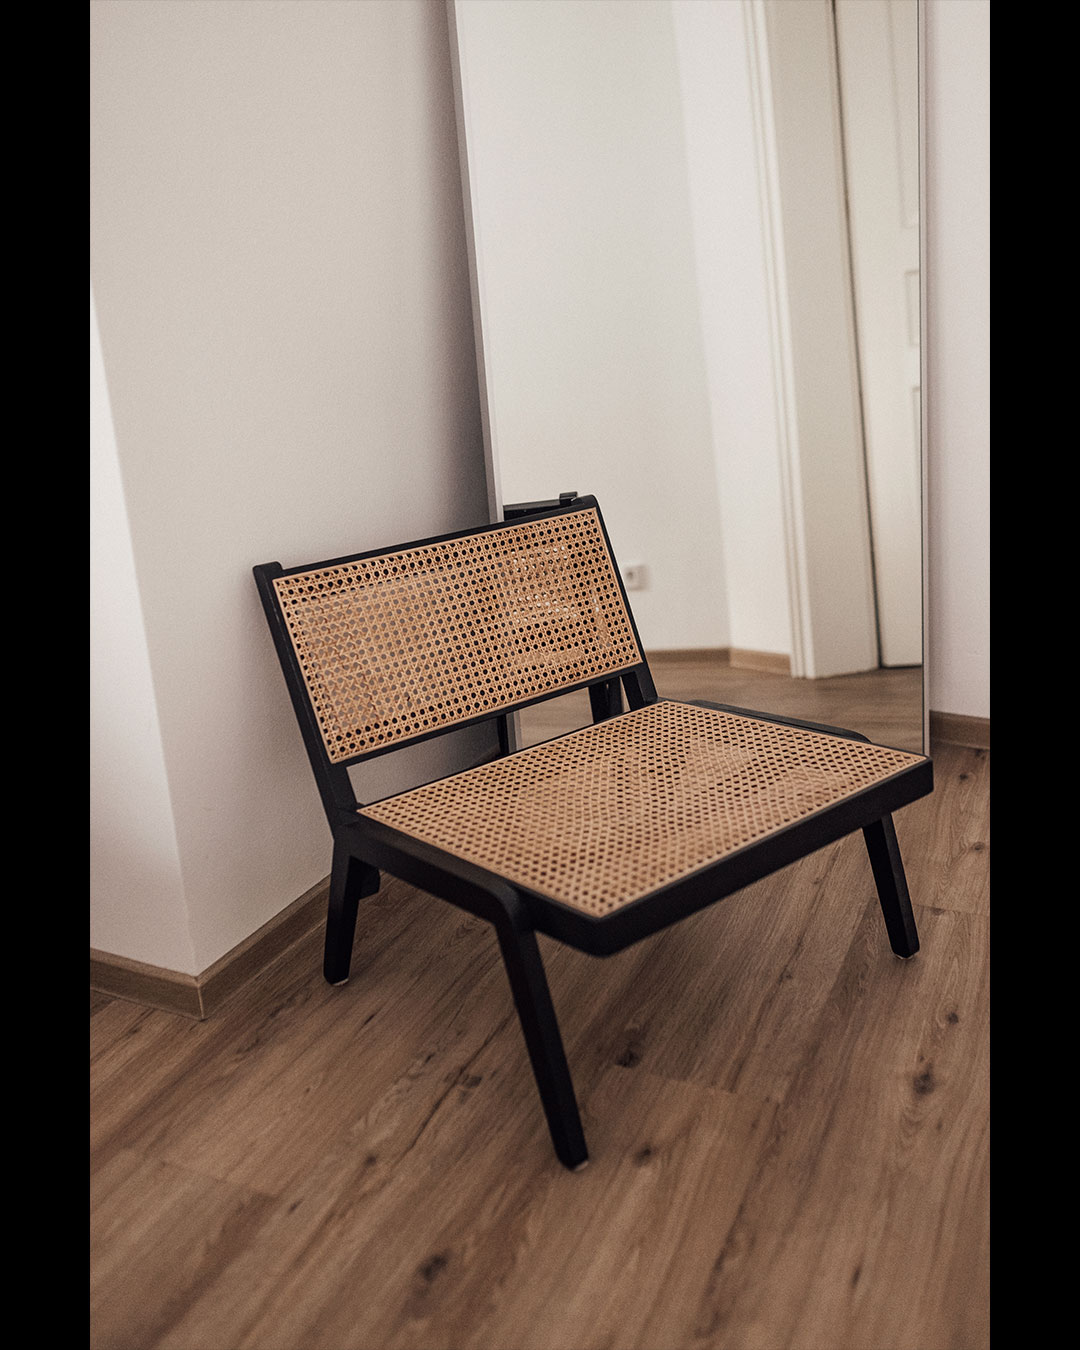 Beistellstuhl aus Wiener Geflecht für ein minimal chic Interior.